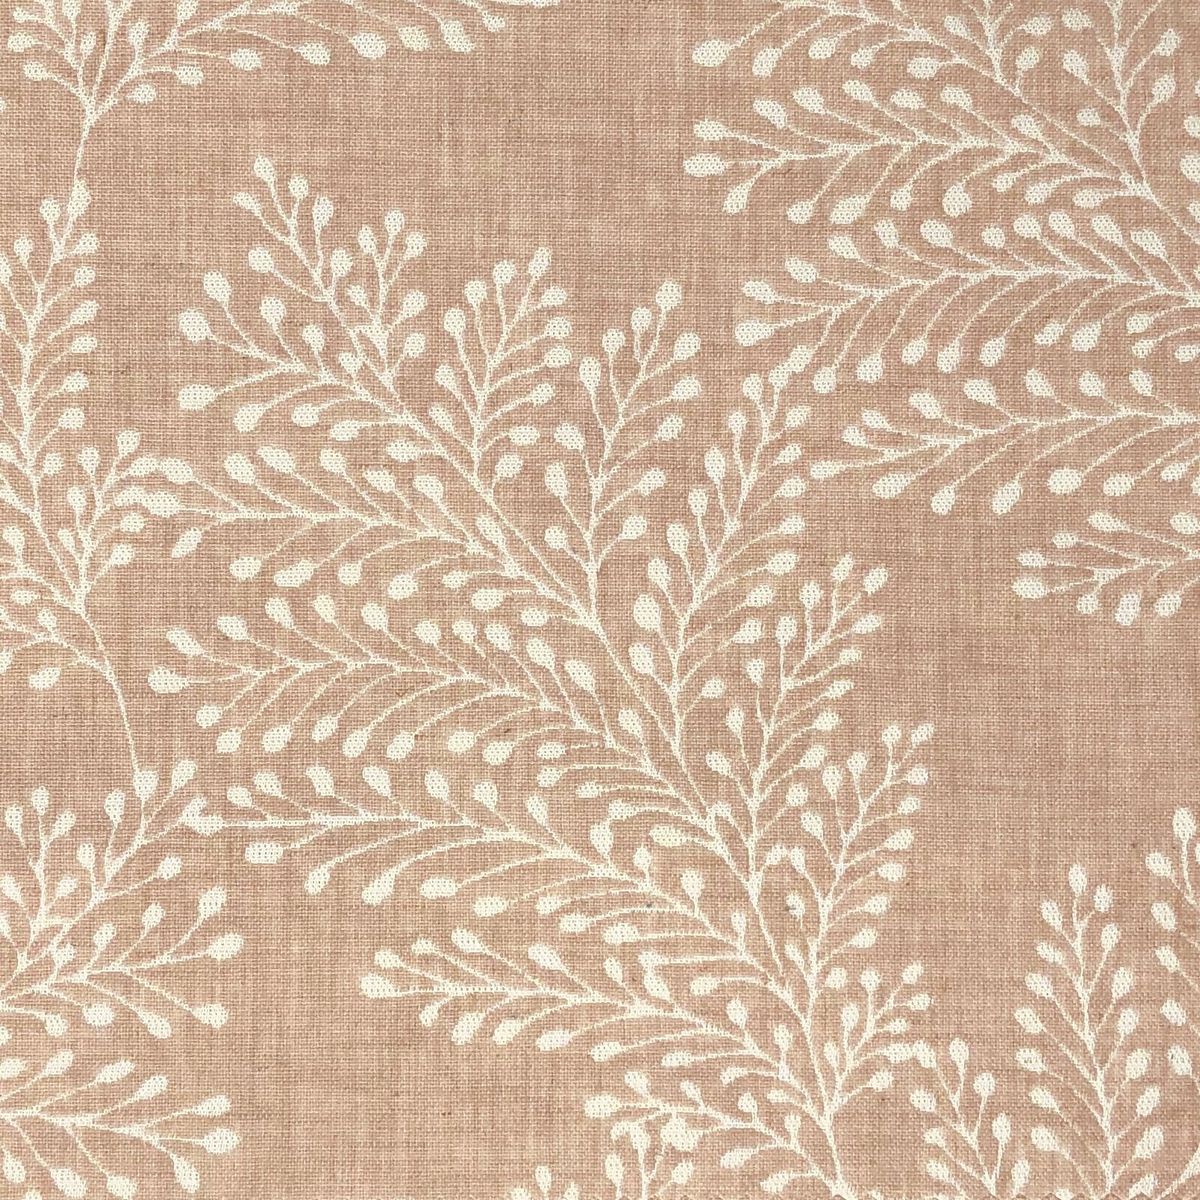 Kensington Blush Fabric by Chatham Glyn